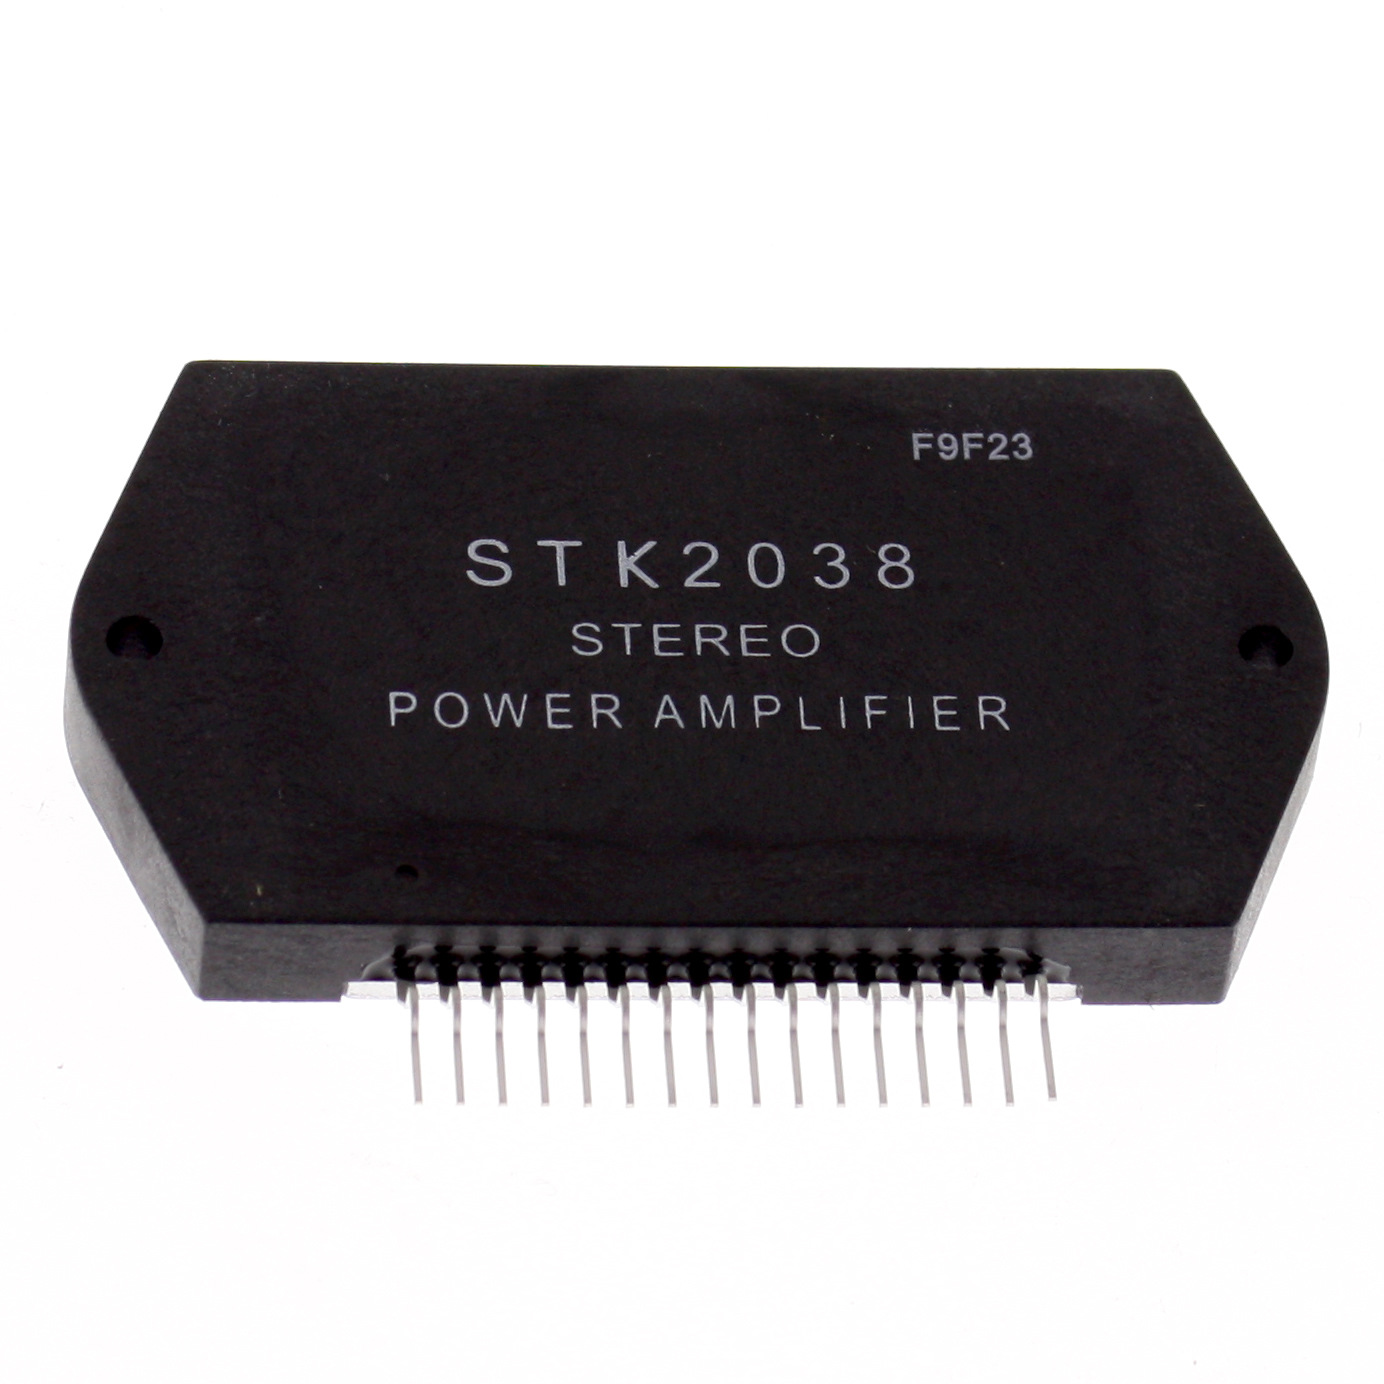 STK2038